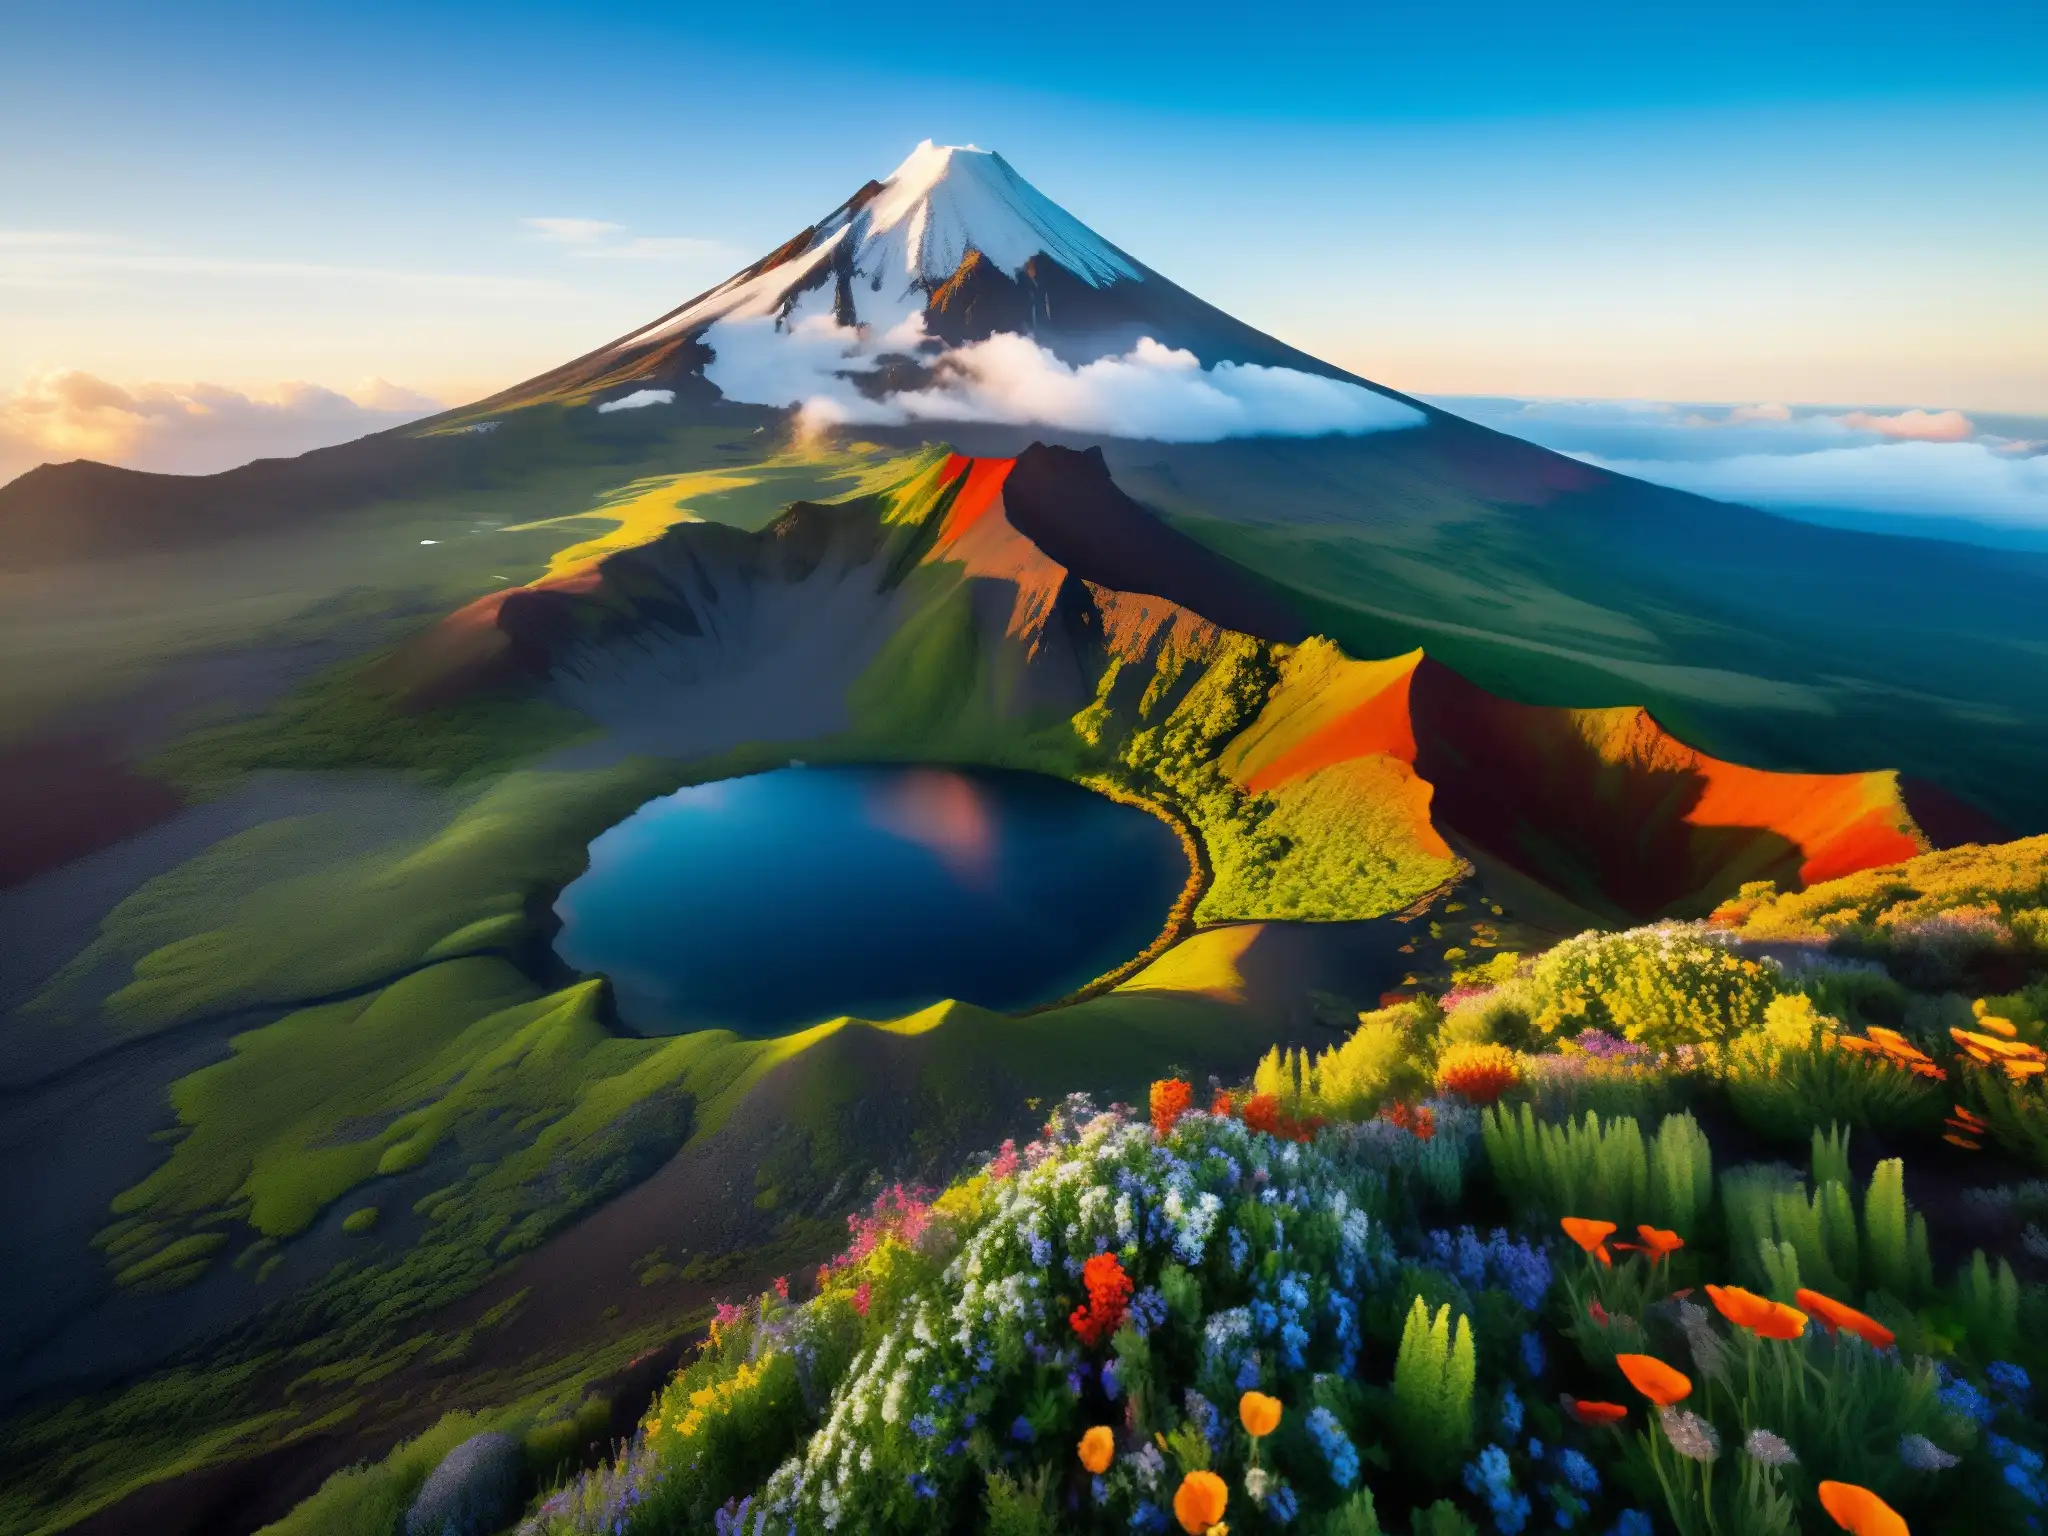 Vista aérea de un majestuoso volcán nevado, rodeado de exuberante vegetación y flores silvestres